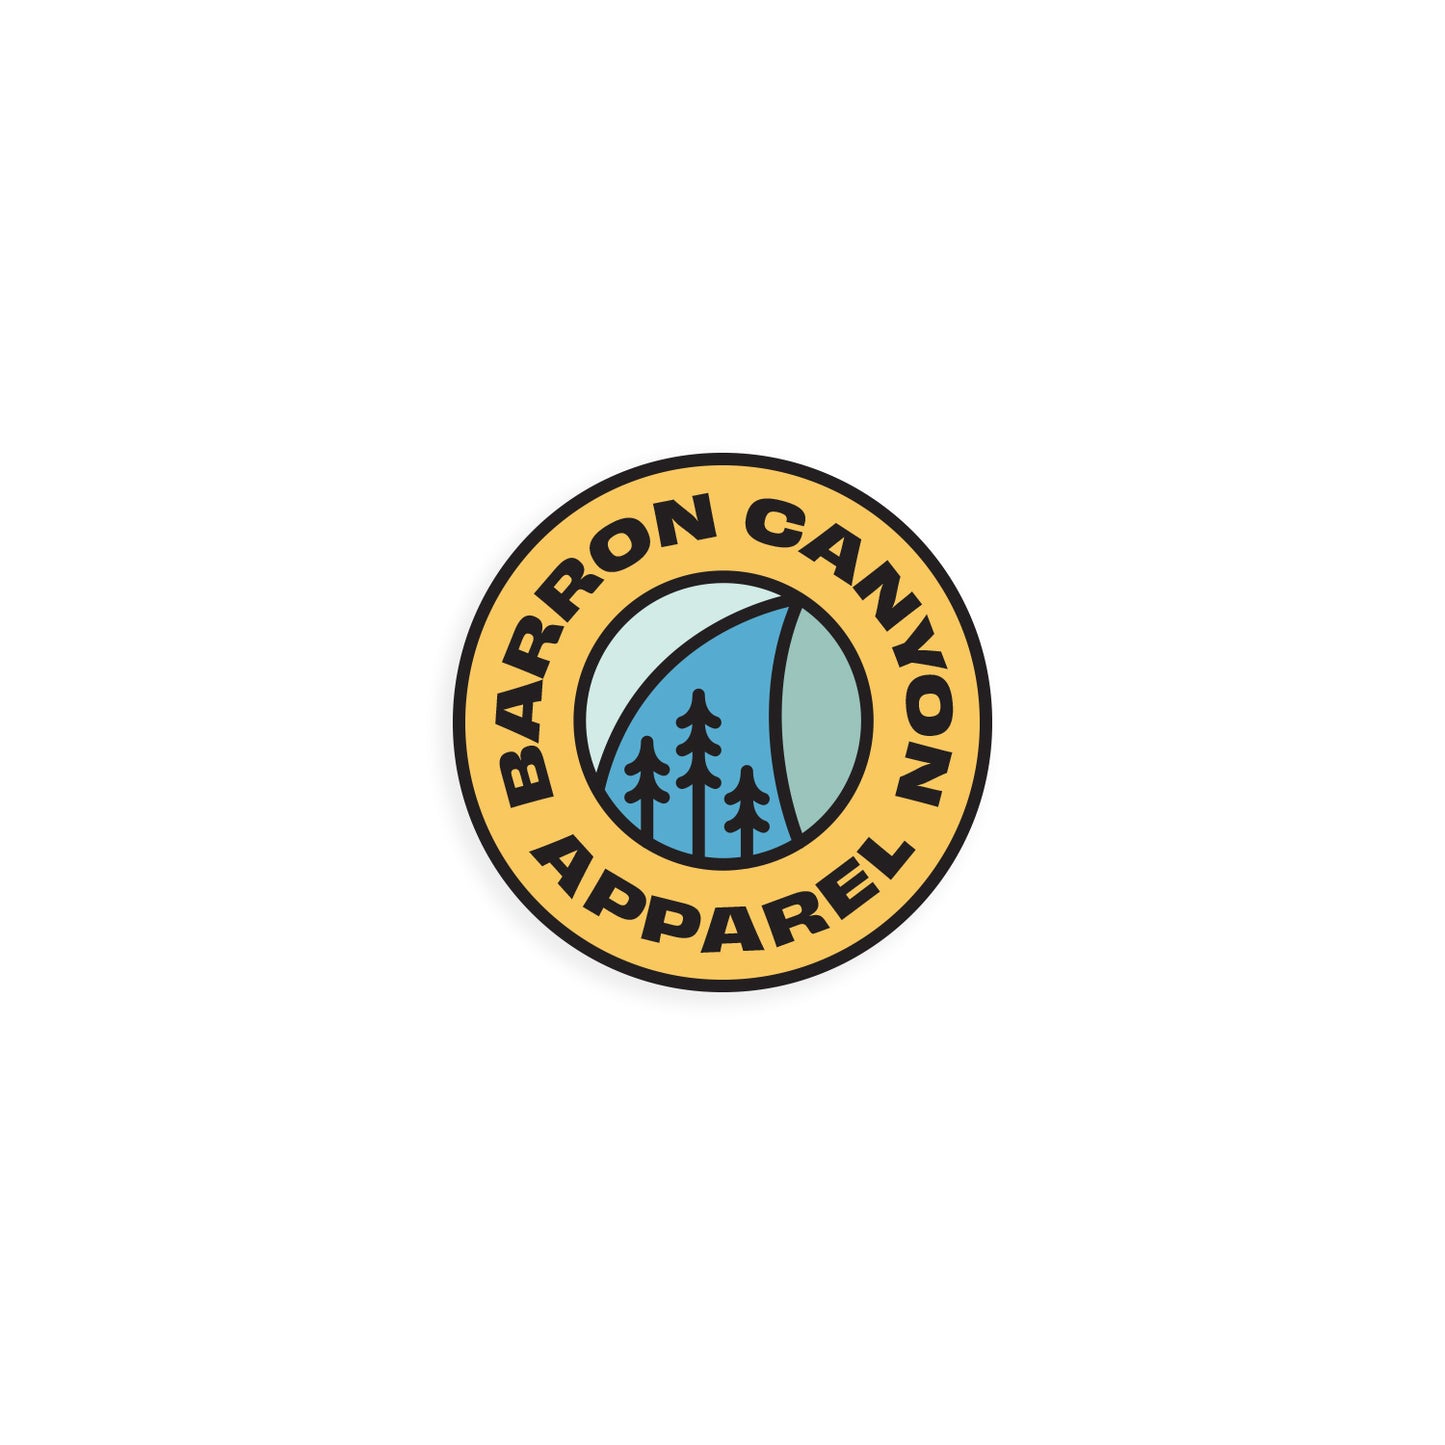 Barron Canyon Apparel Logo Sticker